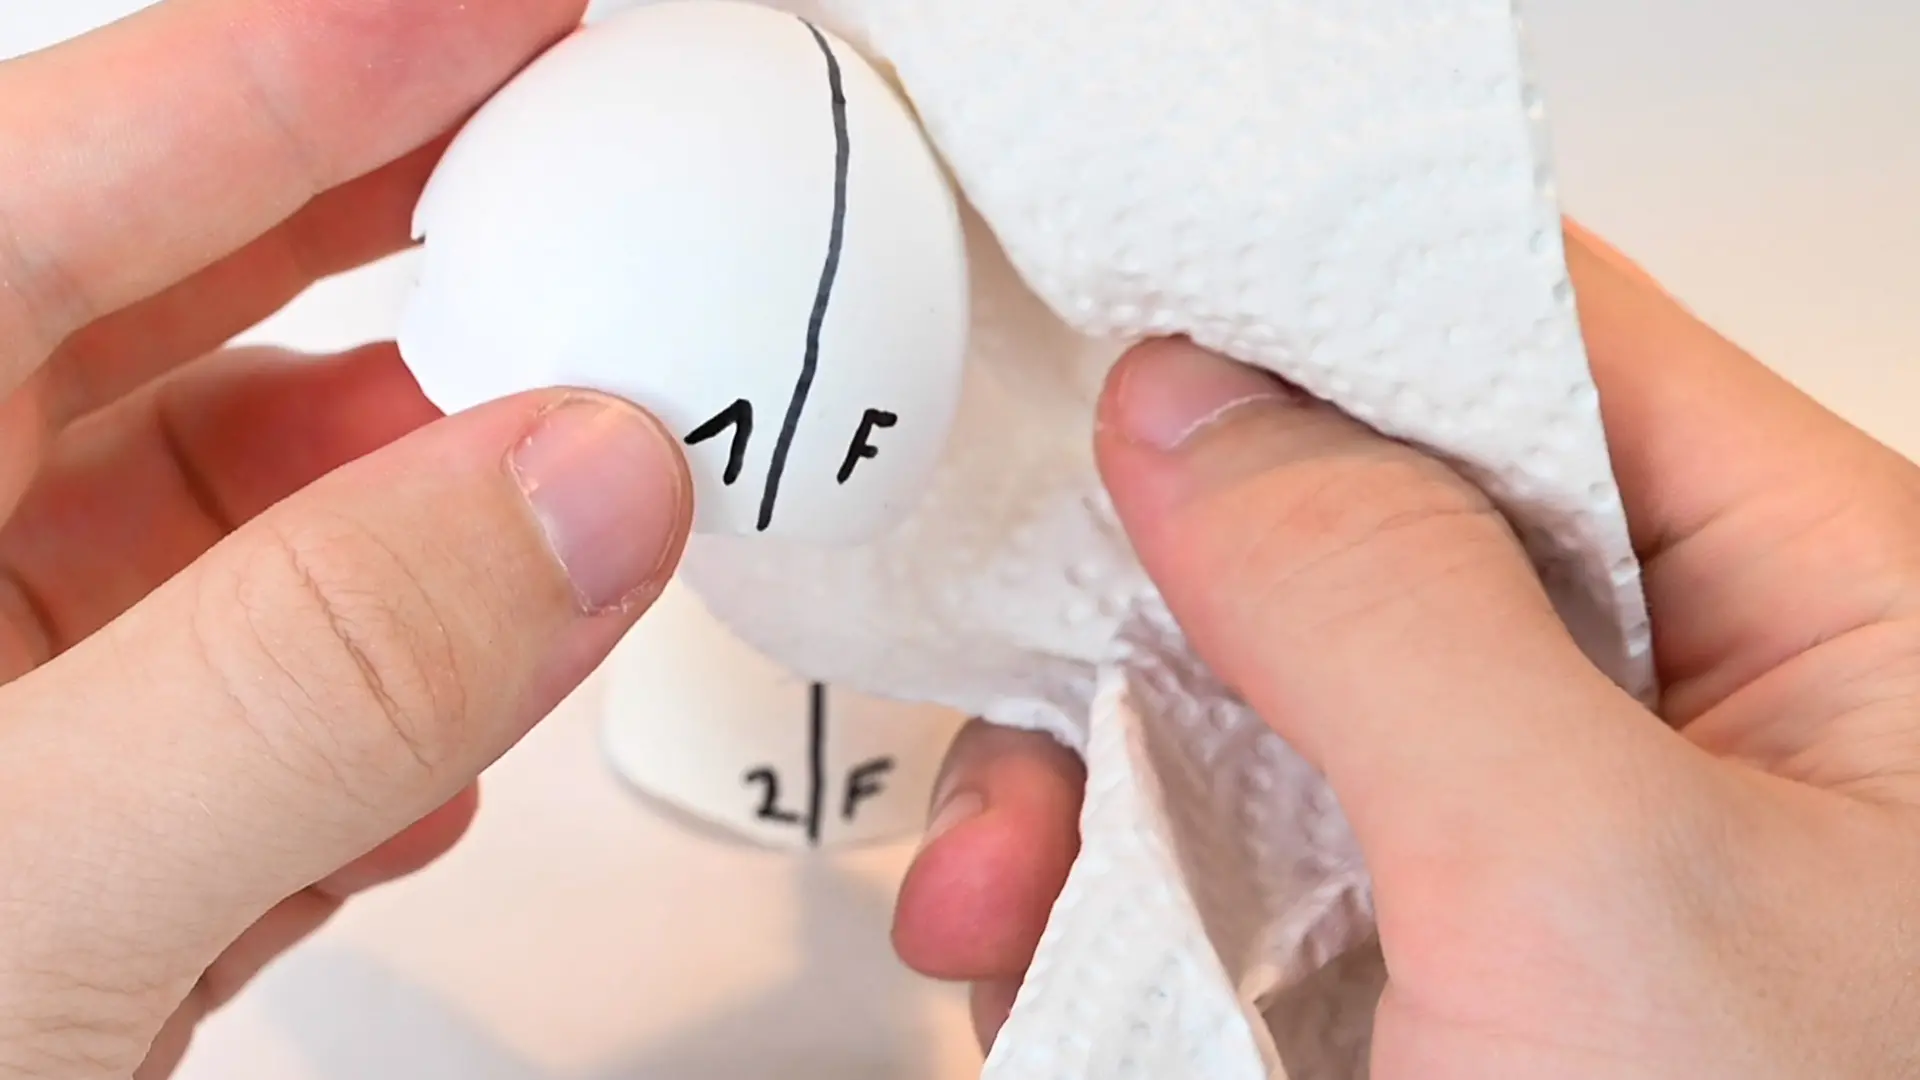 Nahaufnahme von Hand die mit Küchenpapier eine Eierschalhälfte abtupft